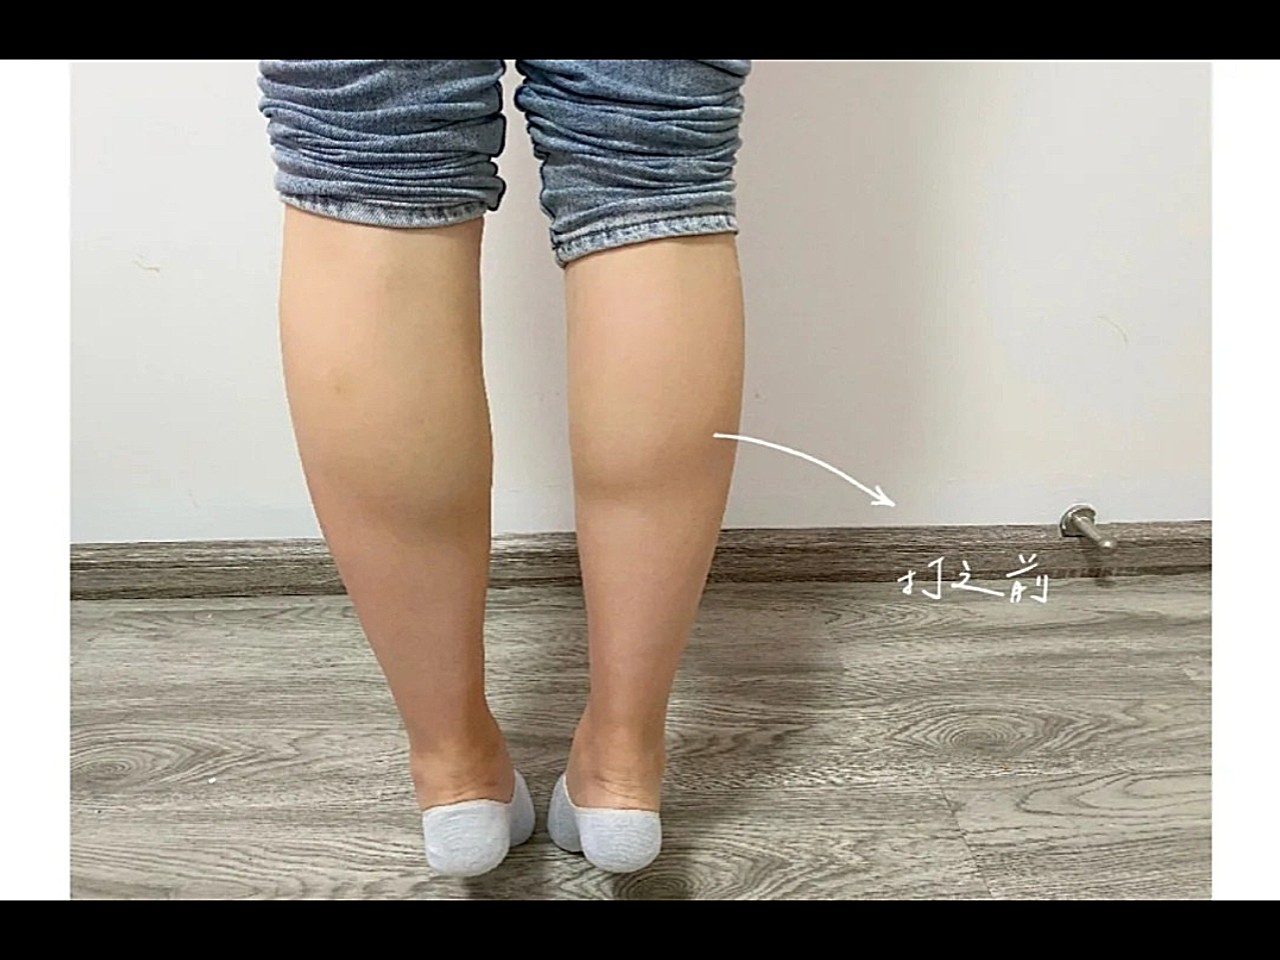 术前诊断诊断:求美者小腿肌肉肥厚发达,腿部线条较差